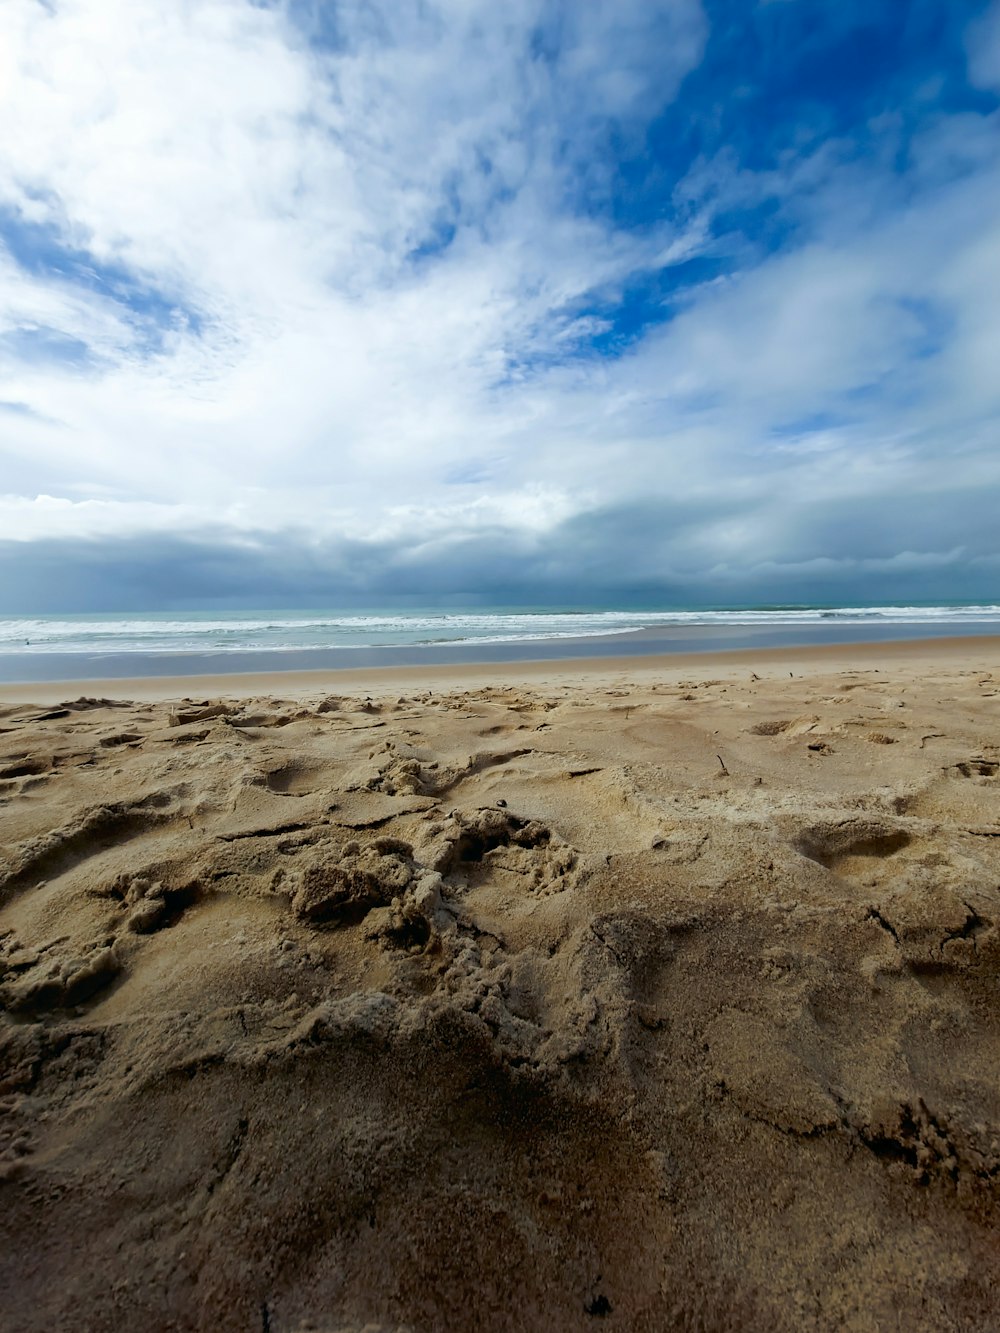 a sandy beach with a cloudy sky